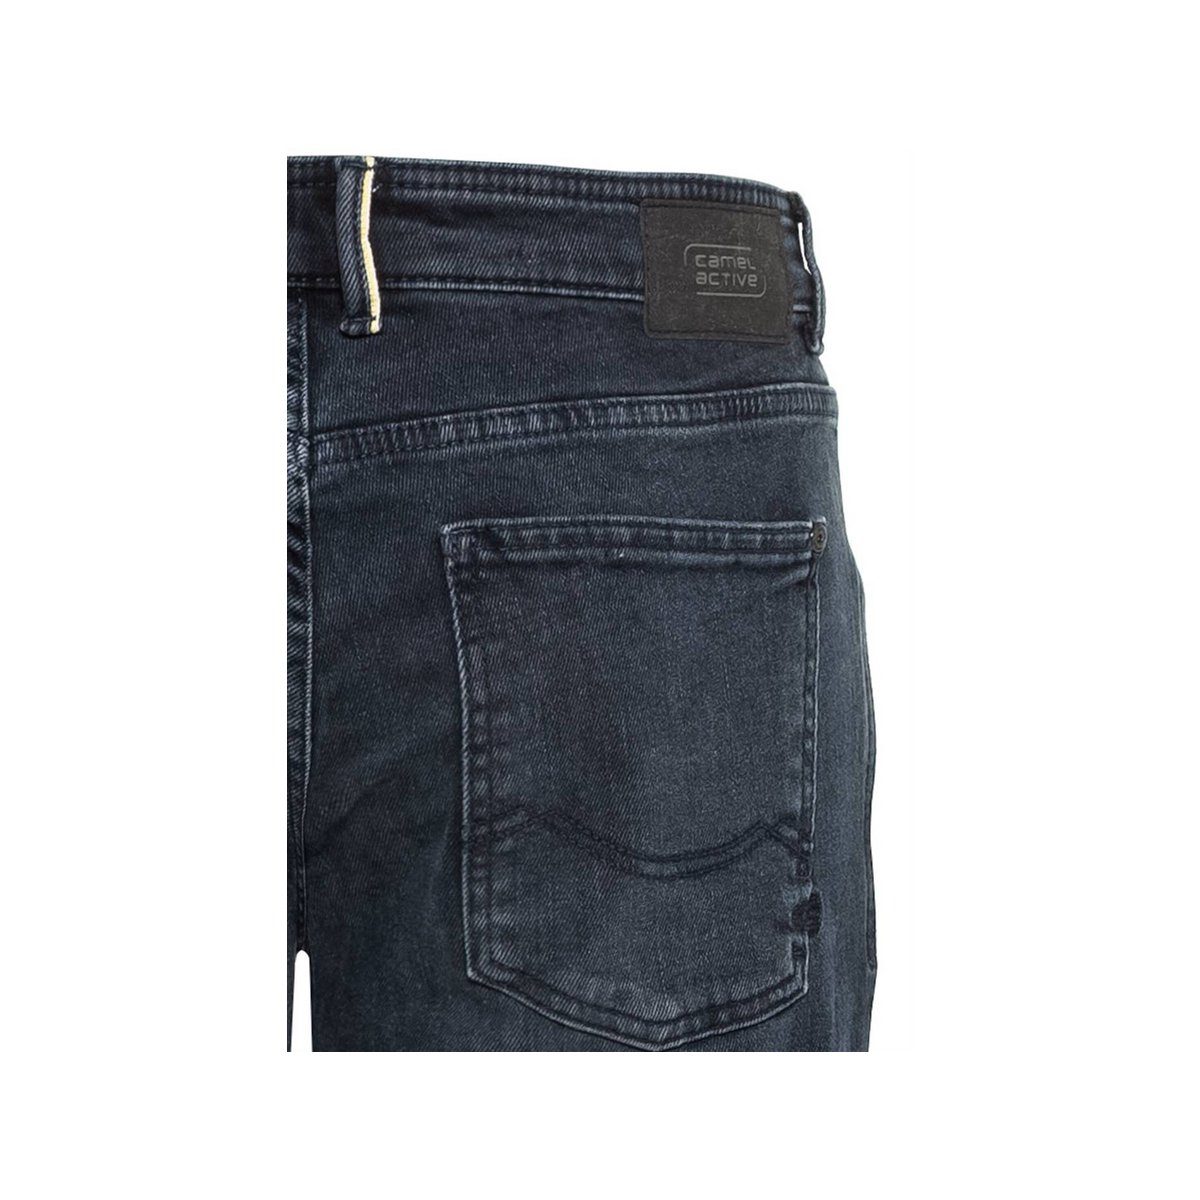 (1-tlg) blau camel active 5-Pocket-Jeans